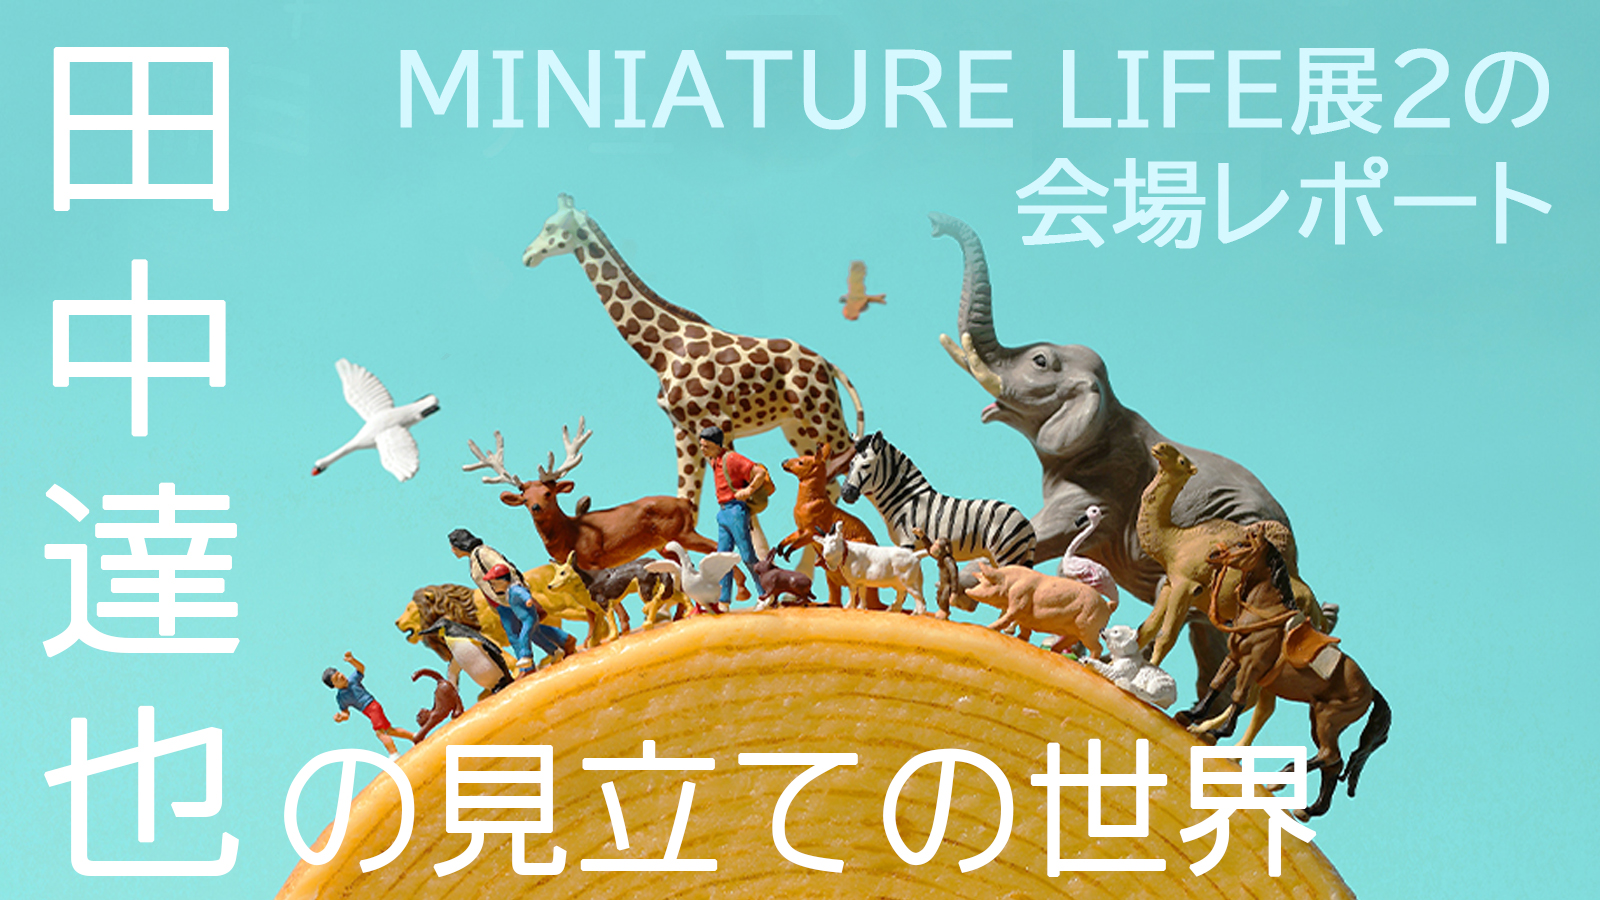 田中達也の見立ての世界MINIATURE LIFE展2の会場レポート | オモ写箱